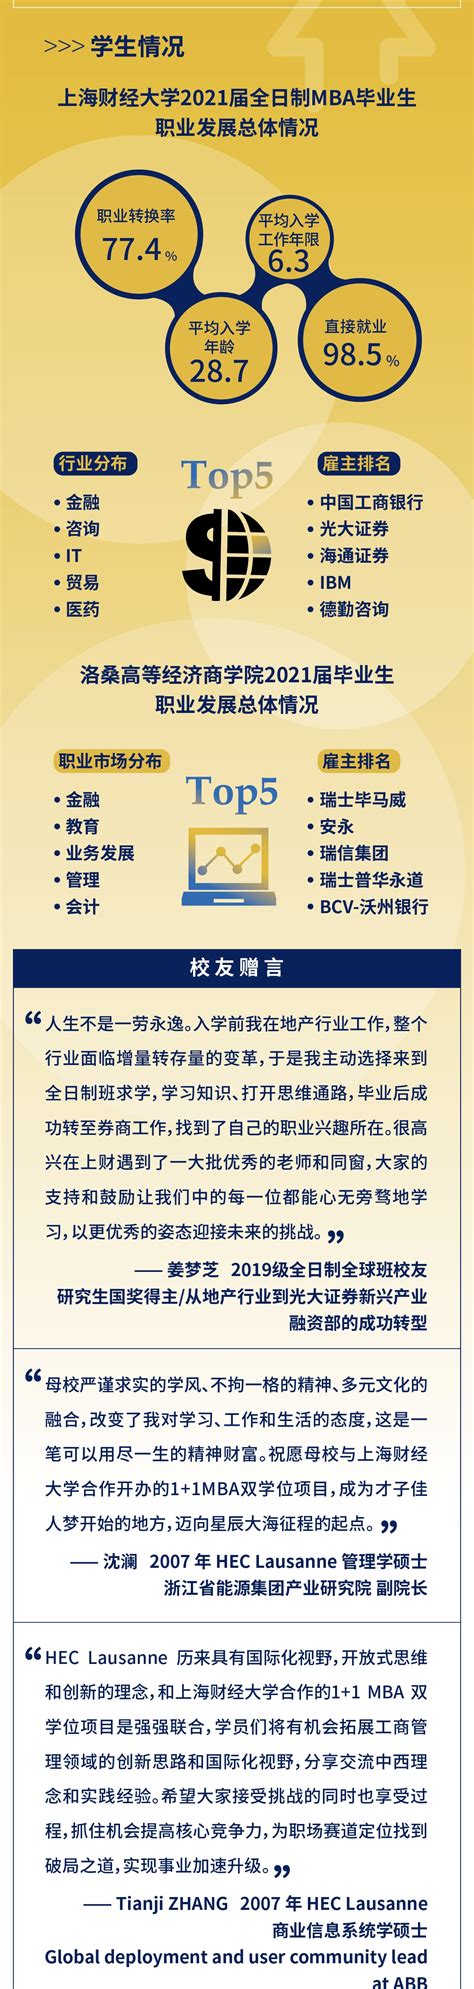 学校召开计算机科学与技术—金融学双学士学位项目专家评审会 | 上海海事大学